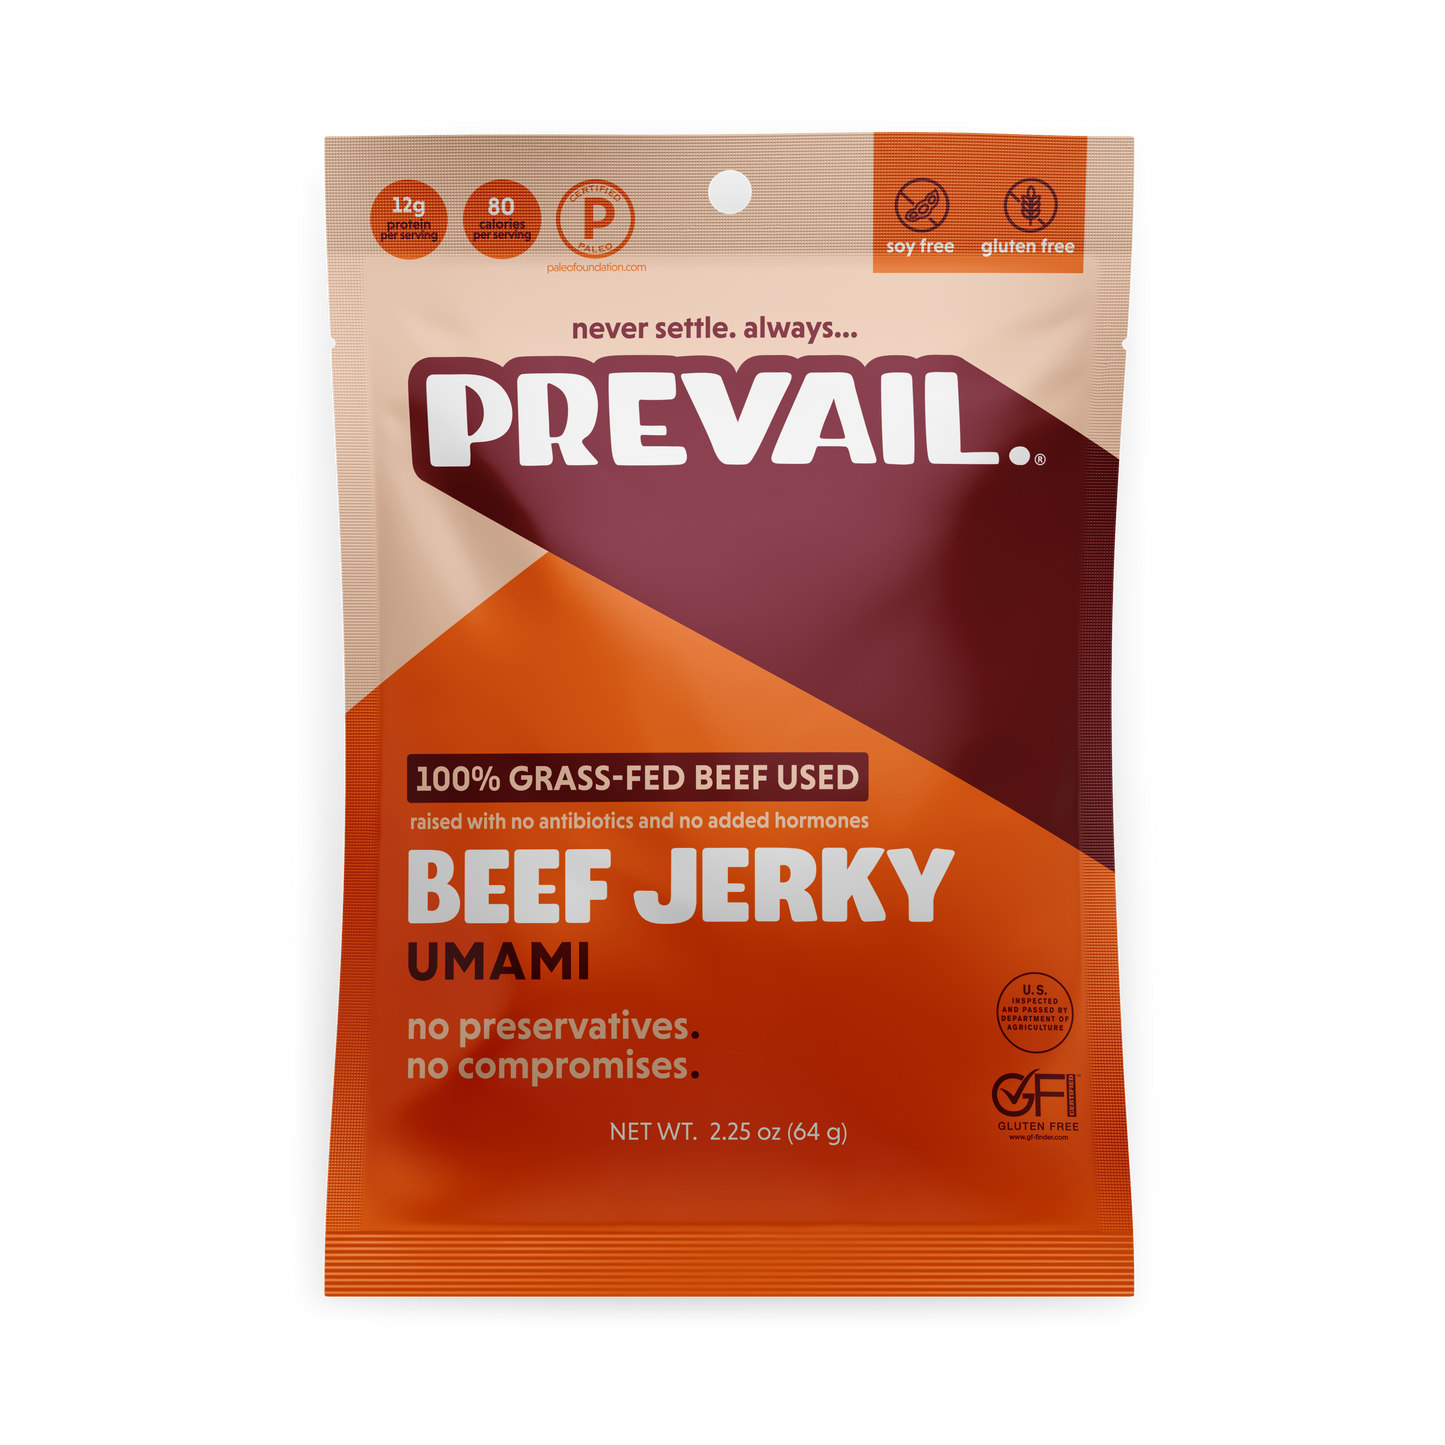 Umami Beef Jerky 3 Pck by PREVAIL Jerky